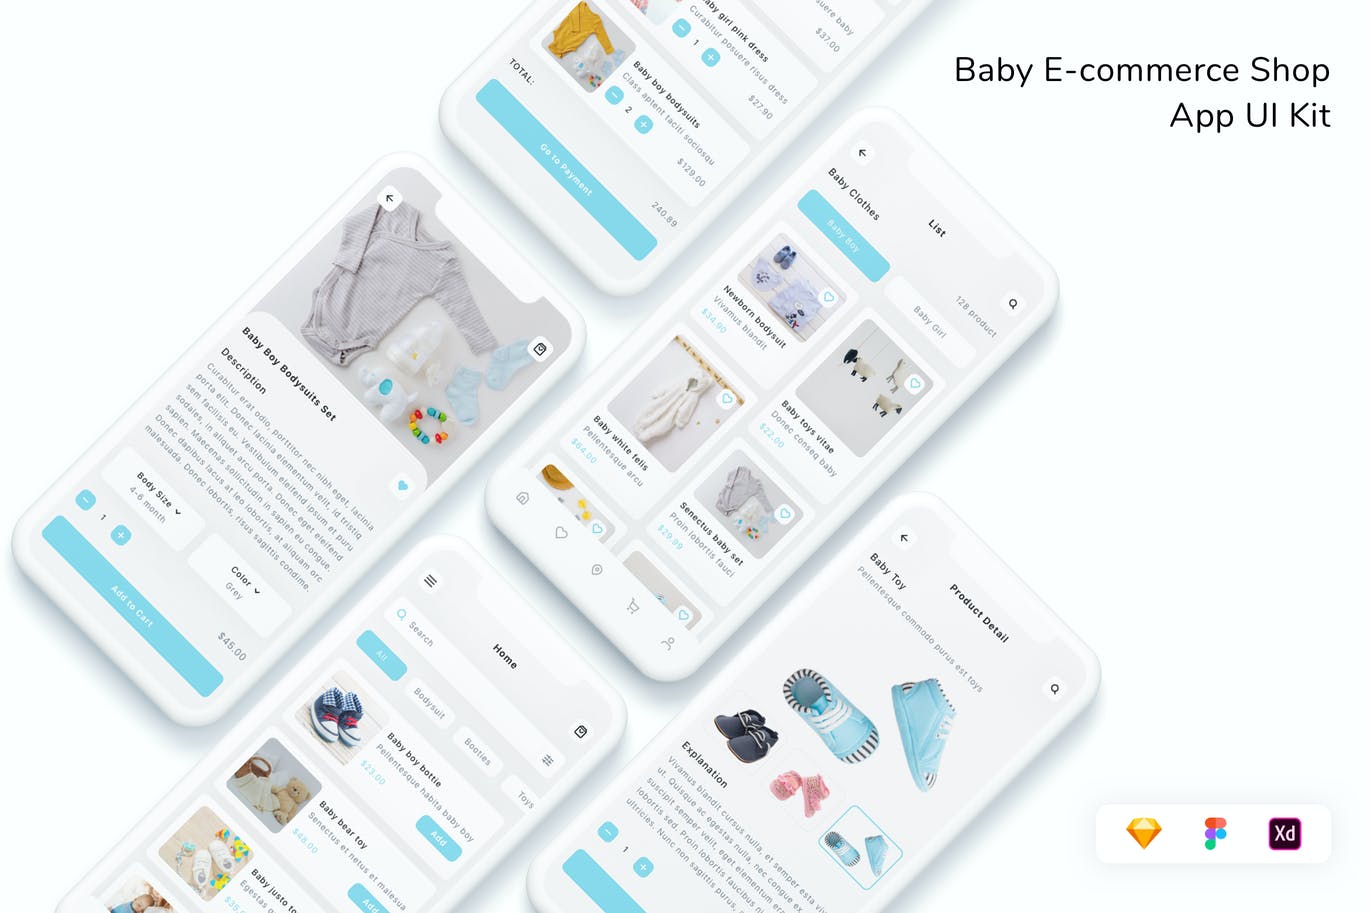 婴儿电子商务商店APP-UI设计素材